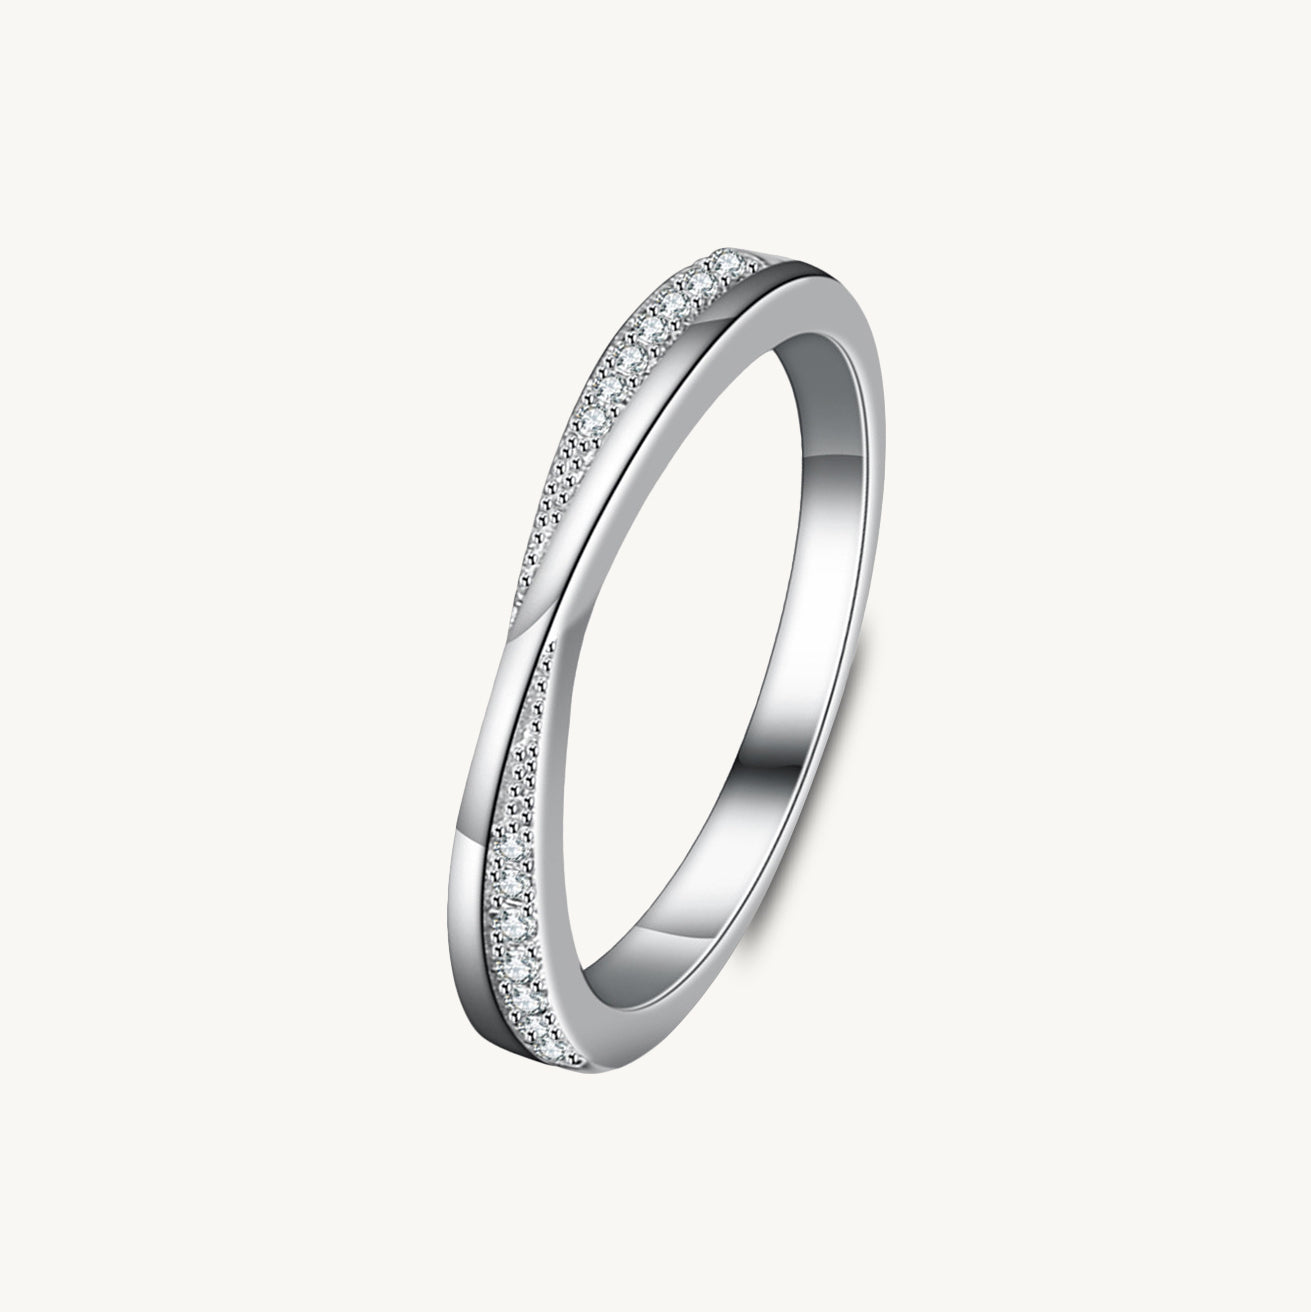 The Cross Moissanite Diamond Engagement Ring